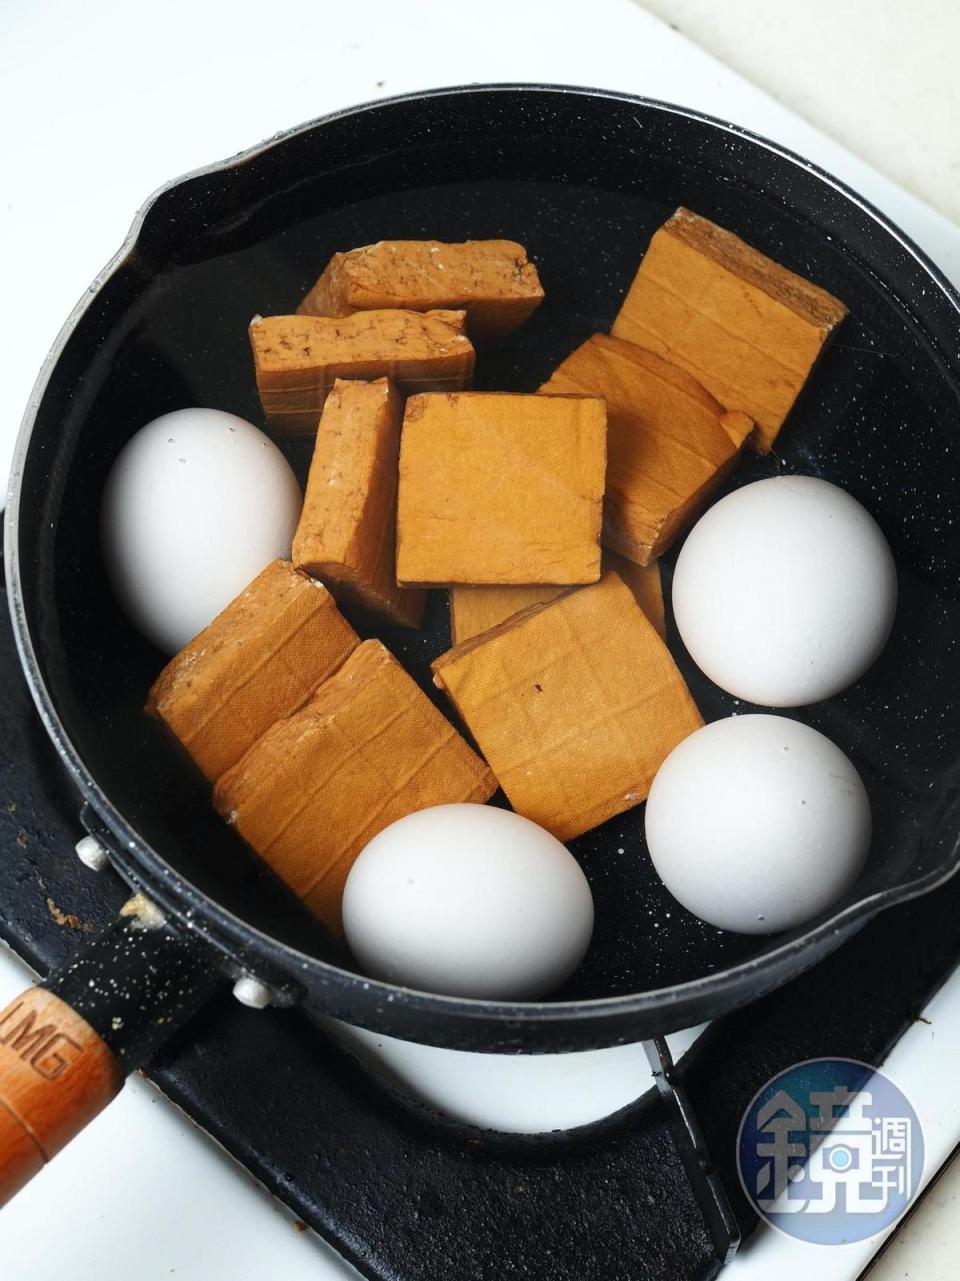 雞蛋和豆干先煮好備用。